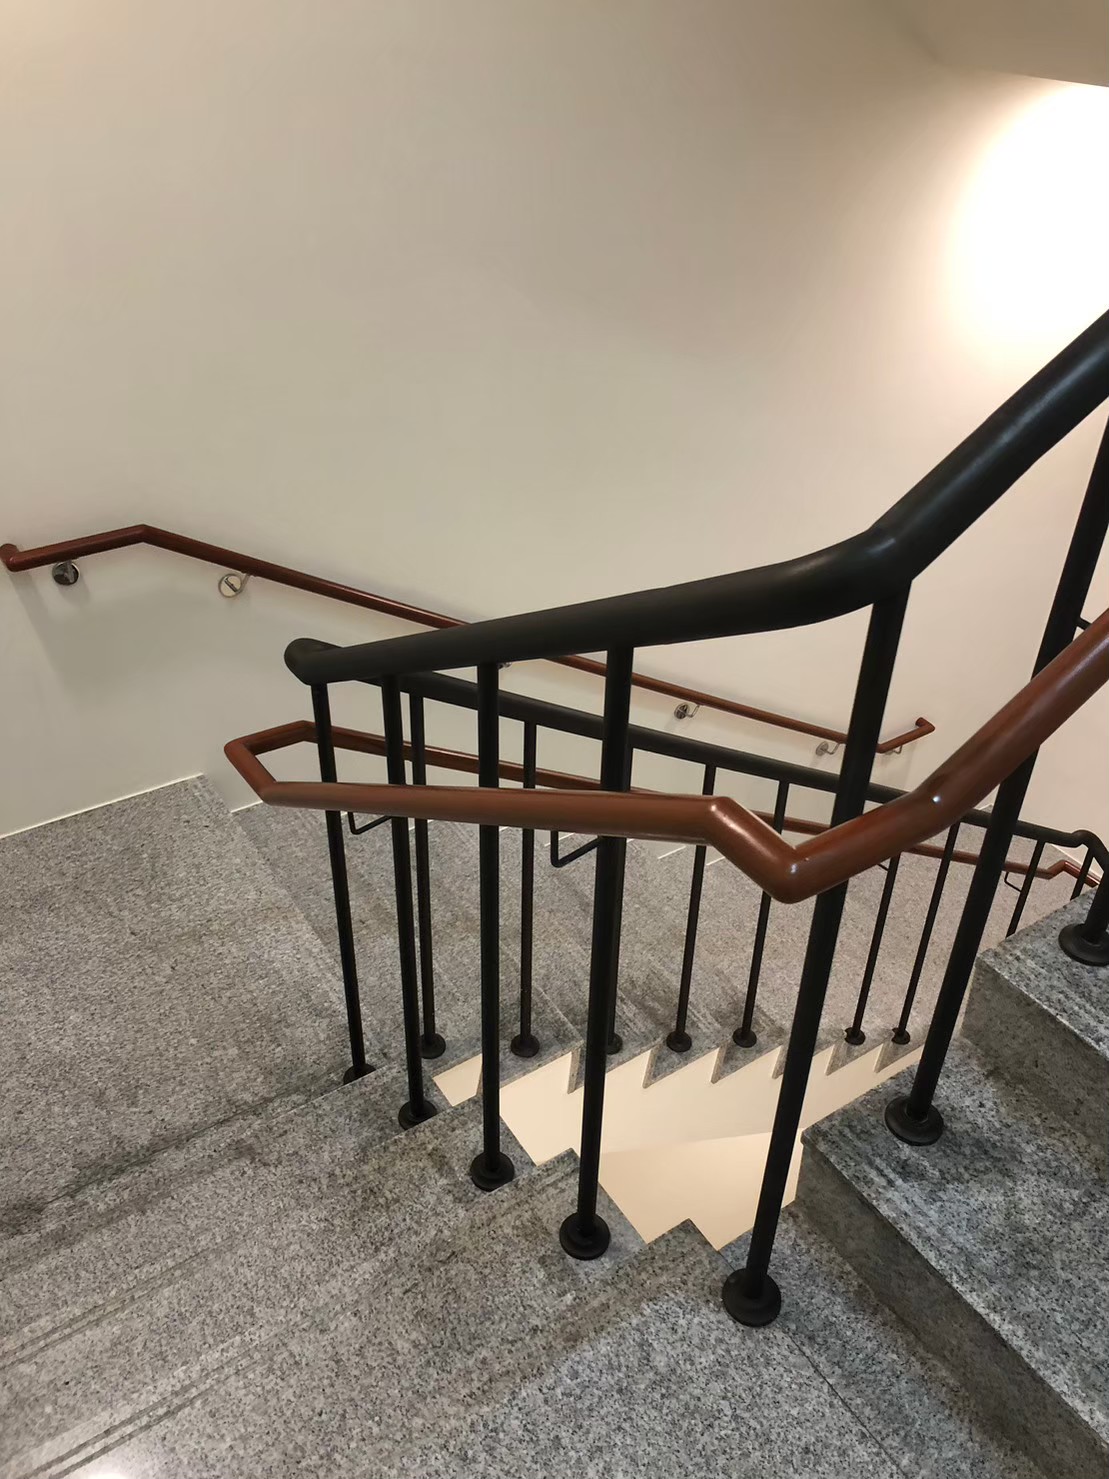 無障礙樓梯木扶手